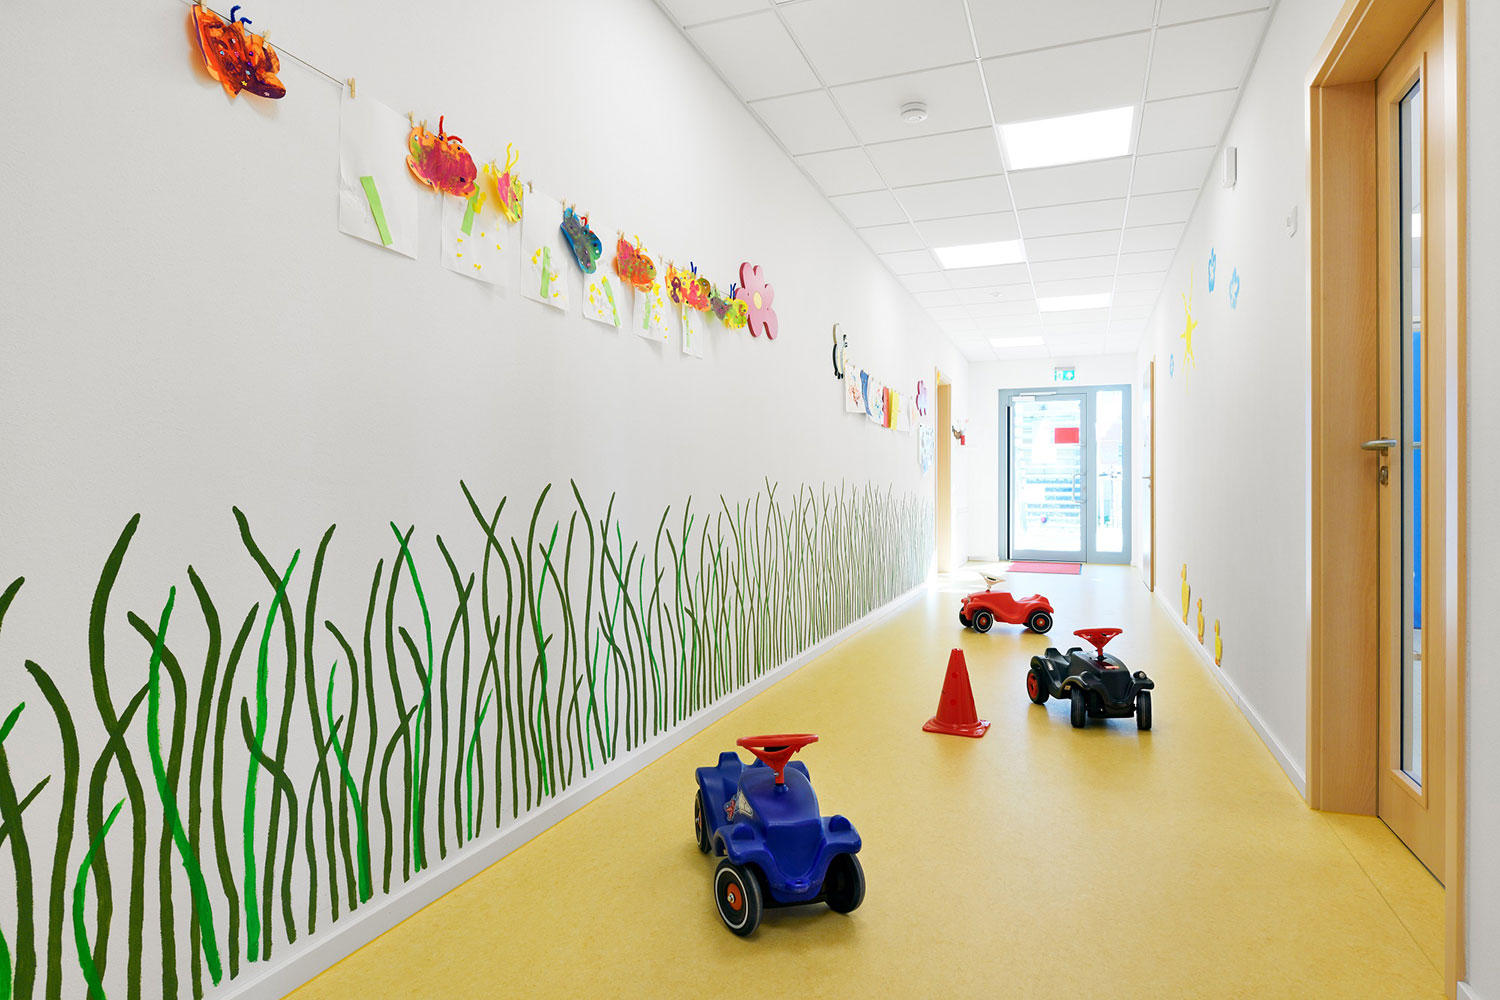 Flur einer Kindertagesstätte mit Bobycars, an der Wand sind Grashalme gemalt und es hängen selbstgemalte Bilder und Schmetterlinge an der Wand